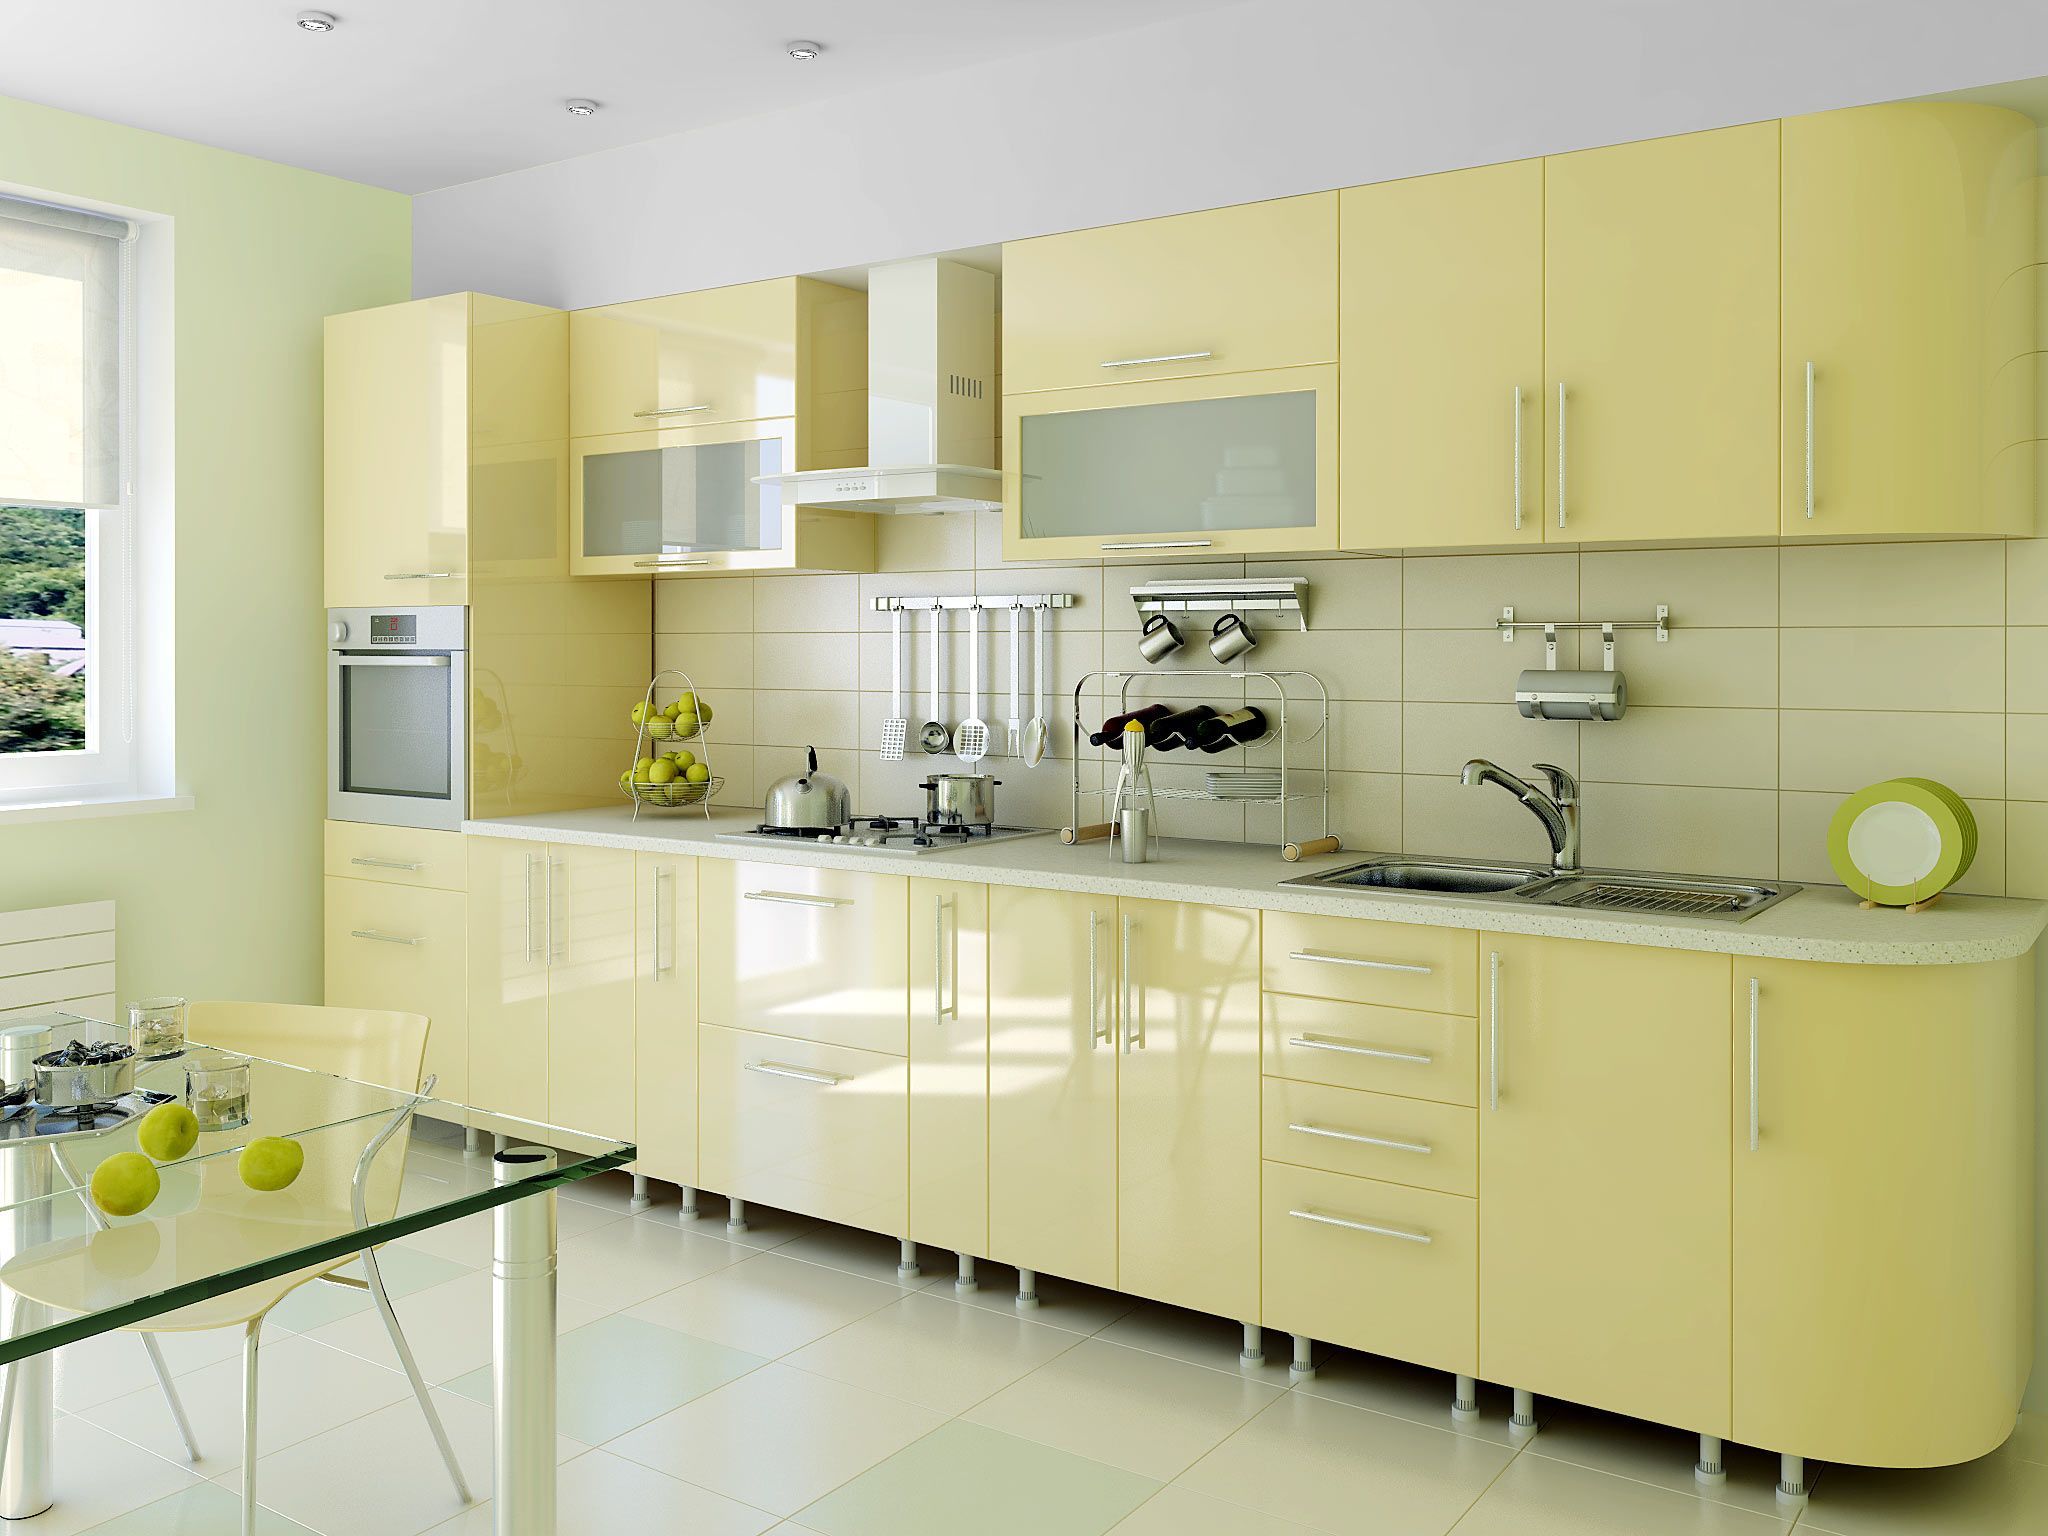 Кухня Марко прямого линейного типа в современном стиле желтого оттенка с вставками из стекла  